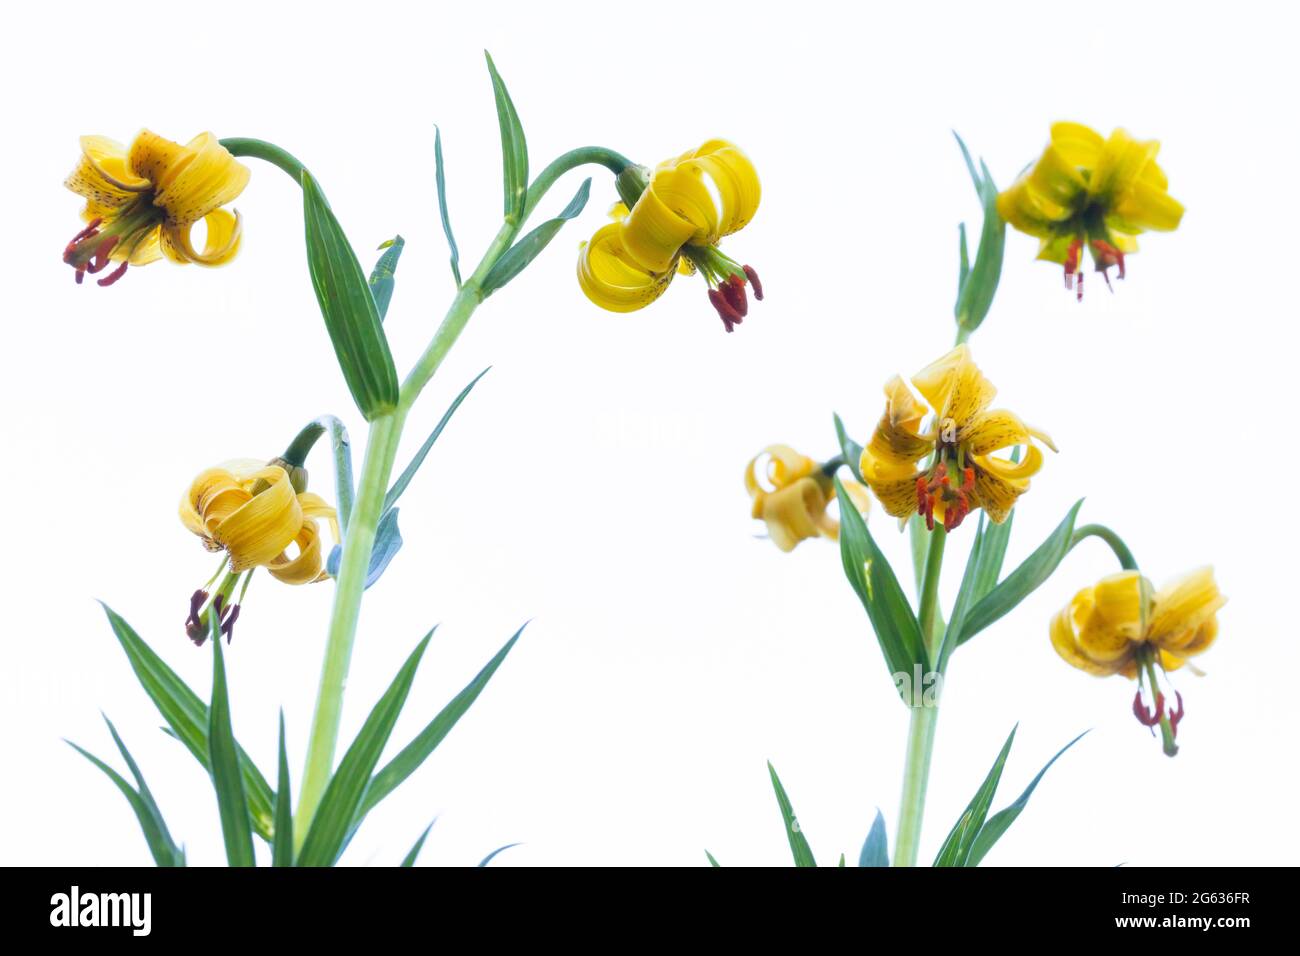 Pyrenean Lily (Lilium pyrenaicum) on white background Stock Photo